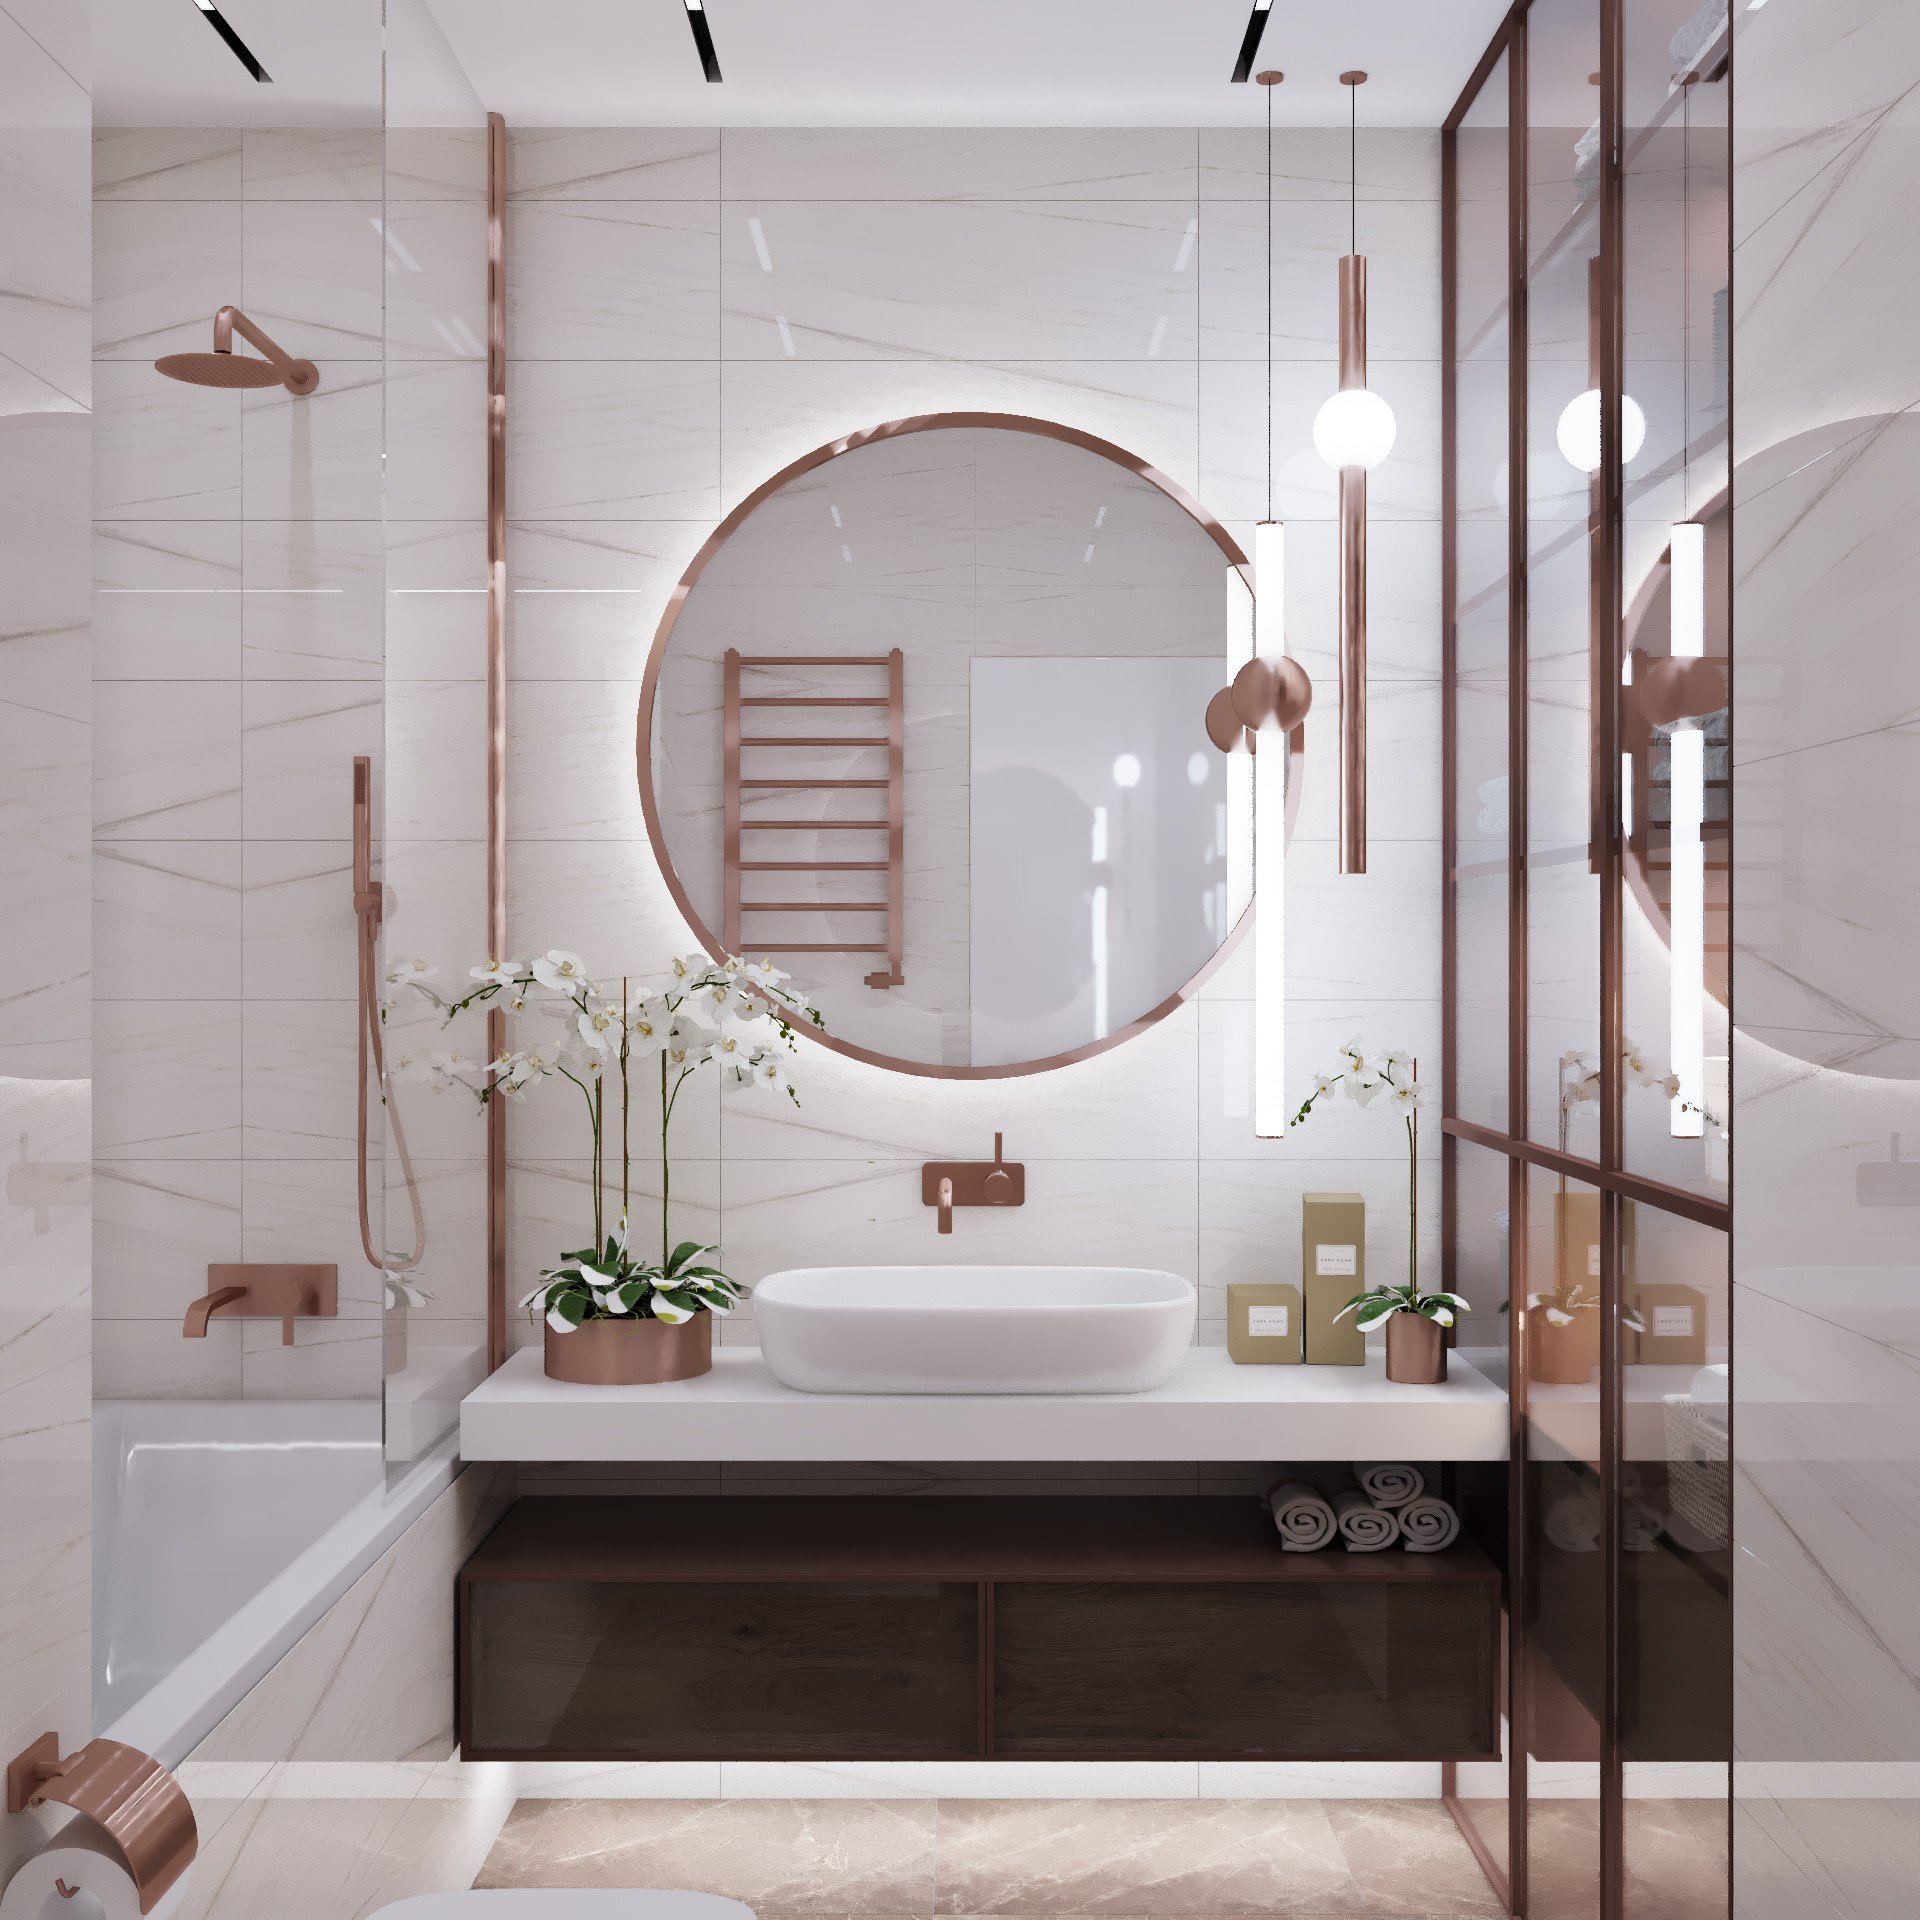 Зеркала в плитке ванной комнаты. Дизайнерские зеркала в ванную. Интерьер ванной комнаты. Зеркало дизайнерское в ванну. Зеркальная ванная комната.